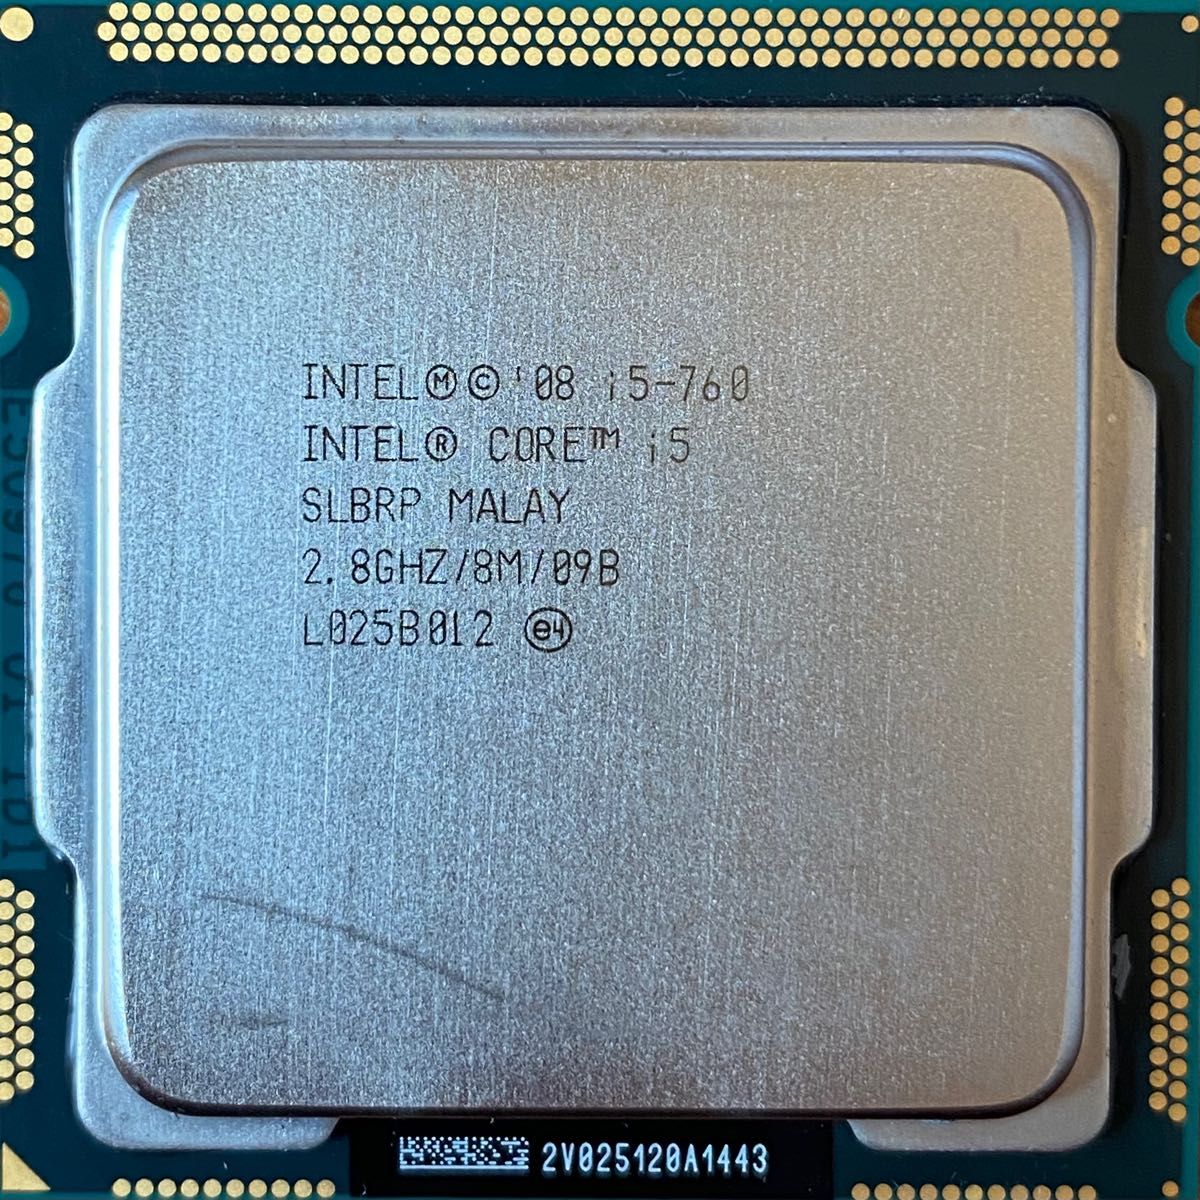 Intel Core i5-760 CPU